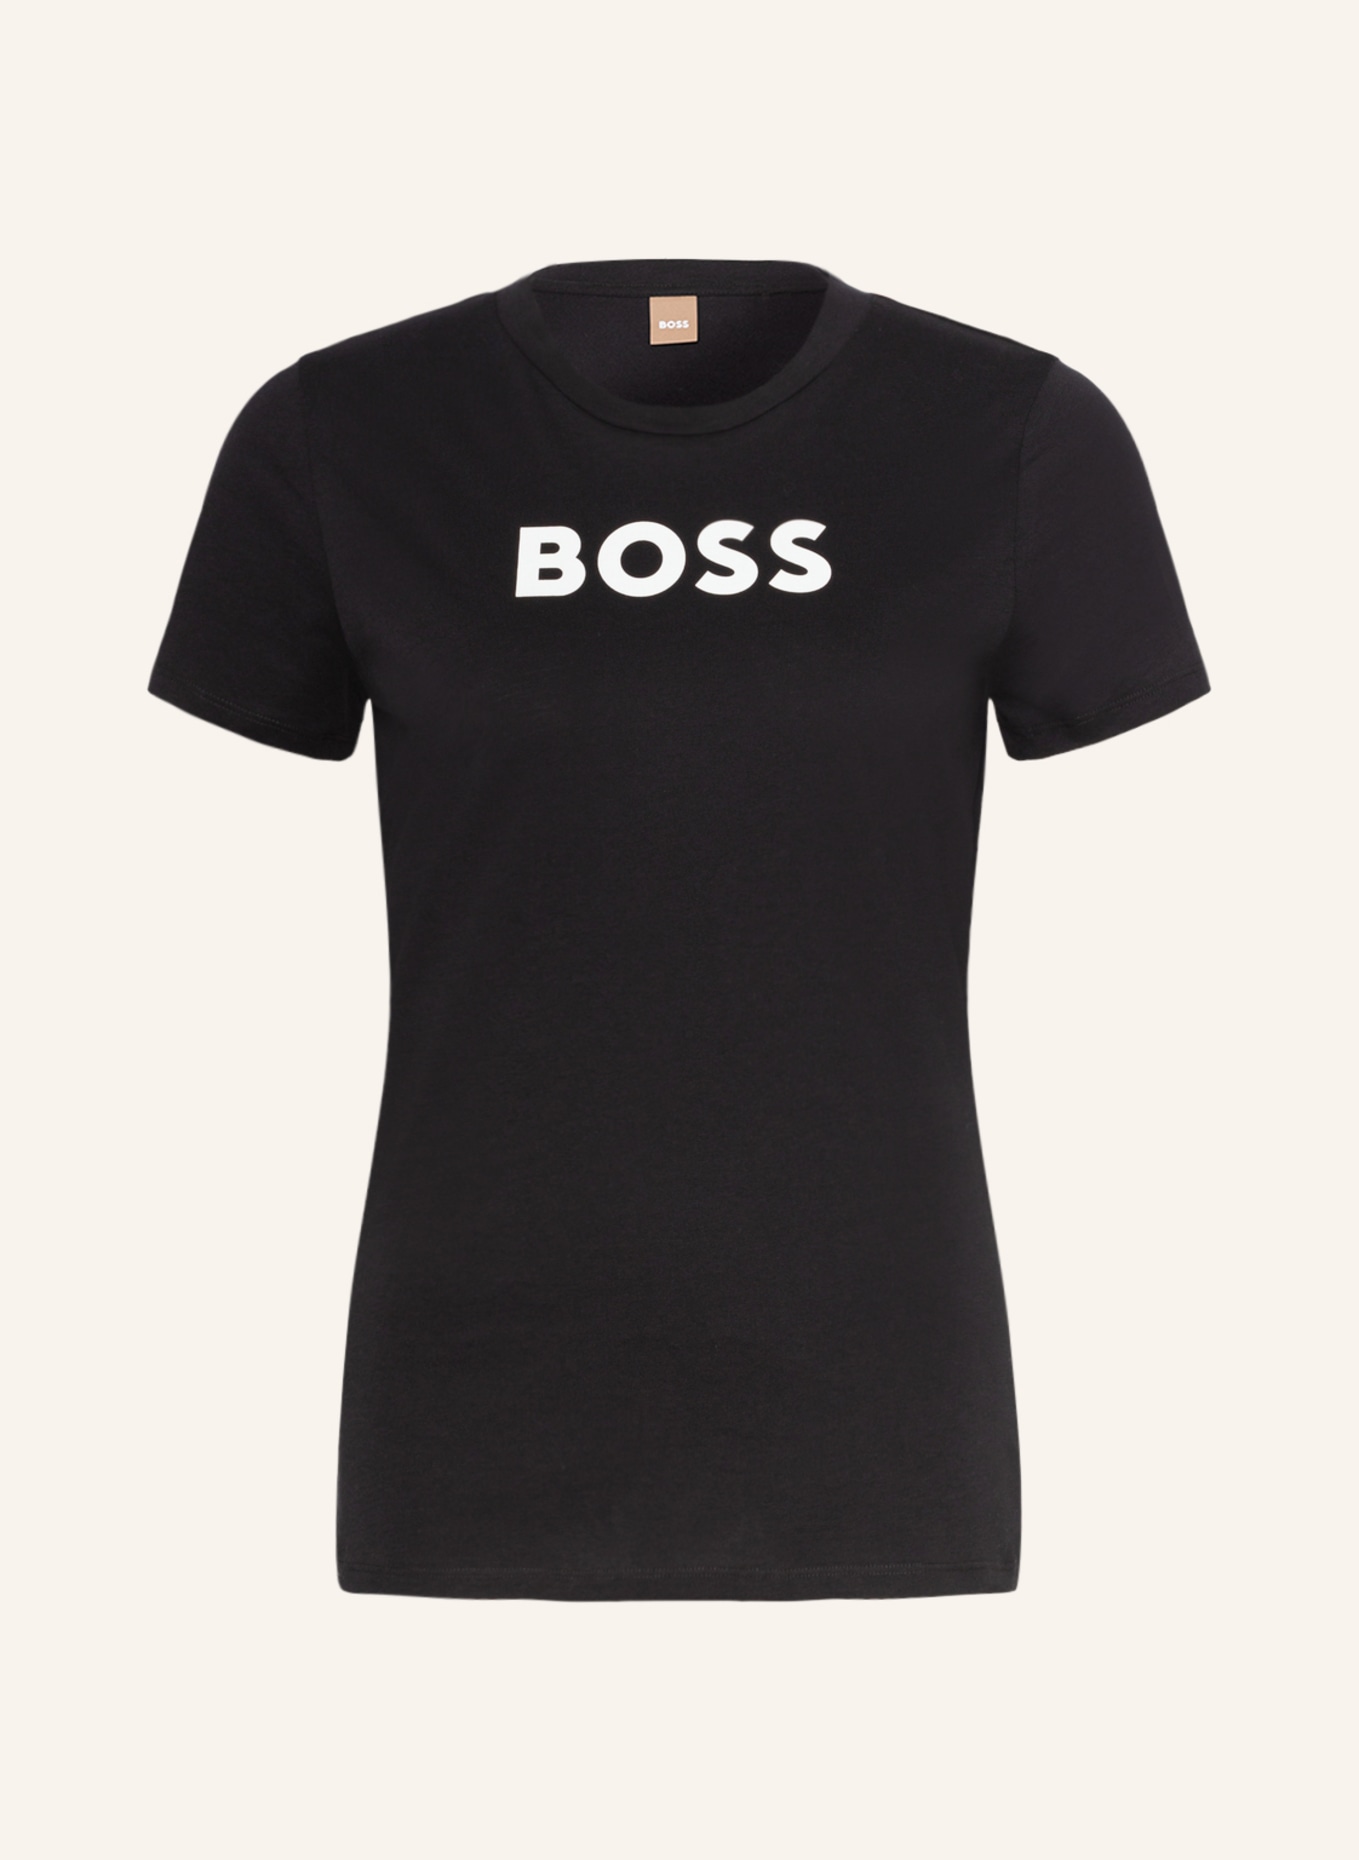 Футболка BOSS ELOGO, черный футболки boss футболка elogo filled